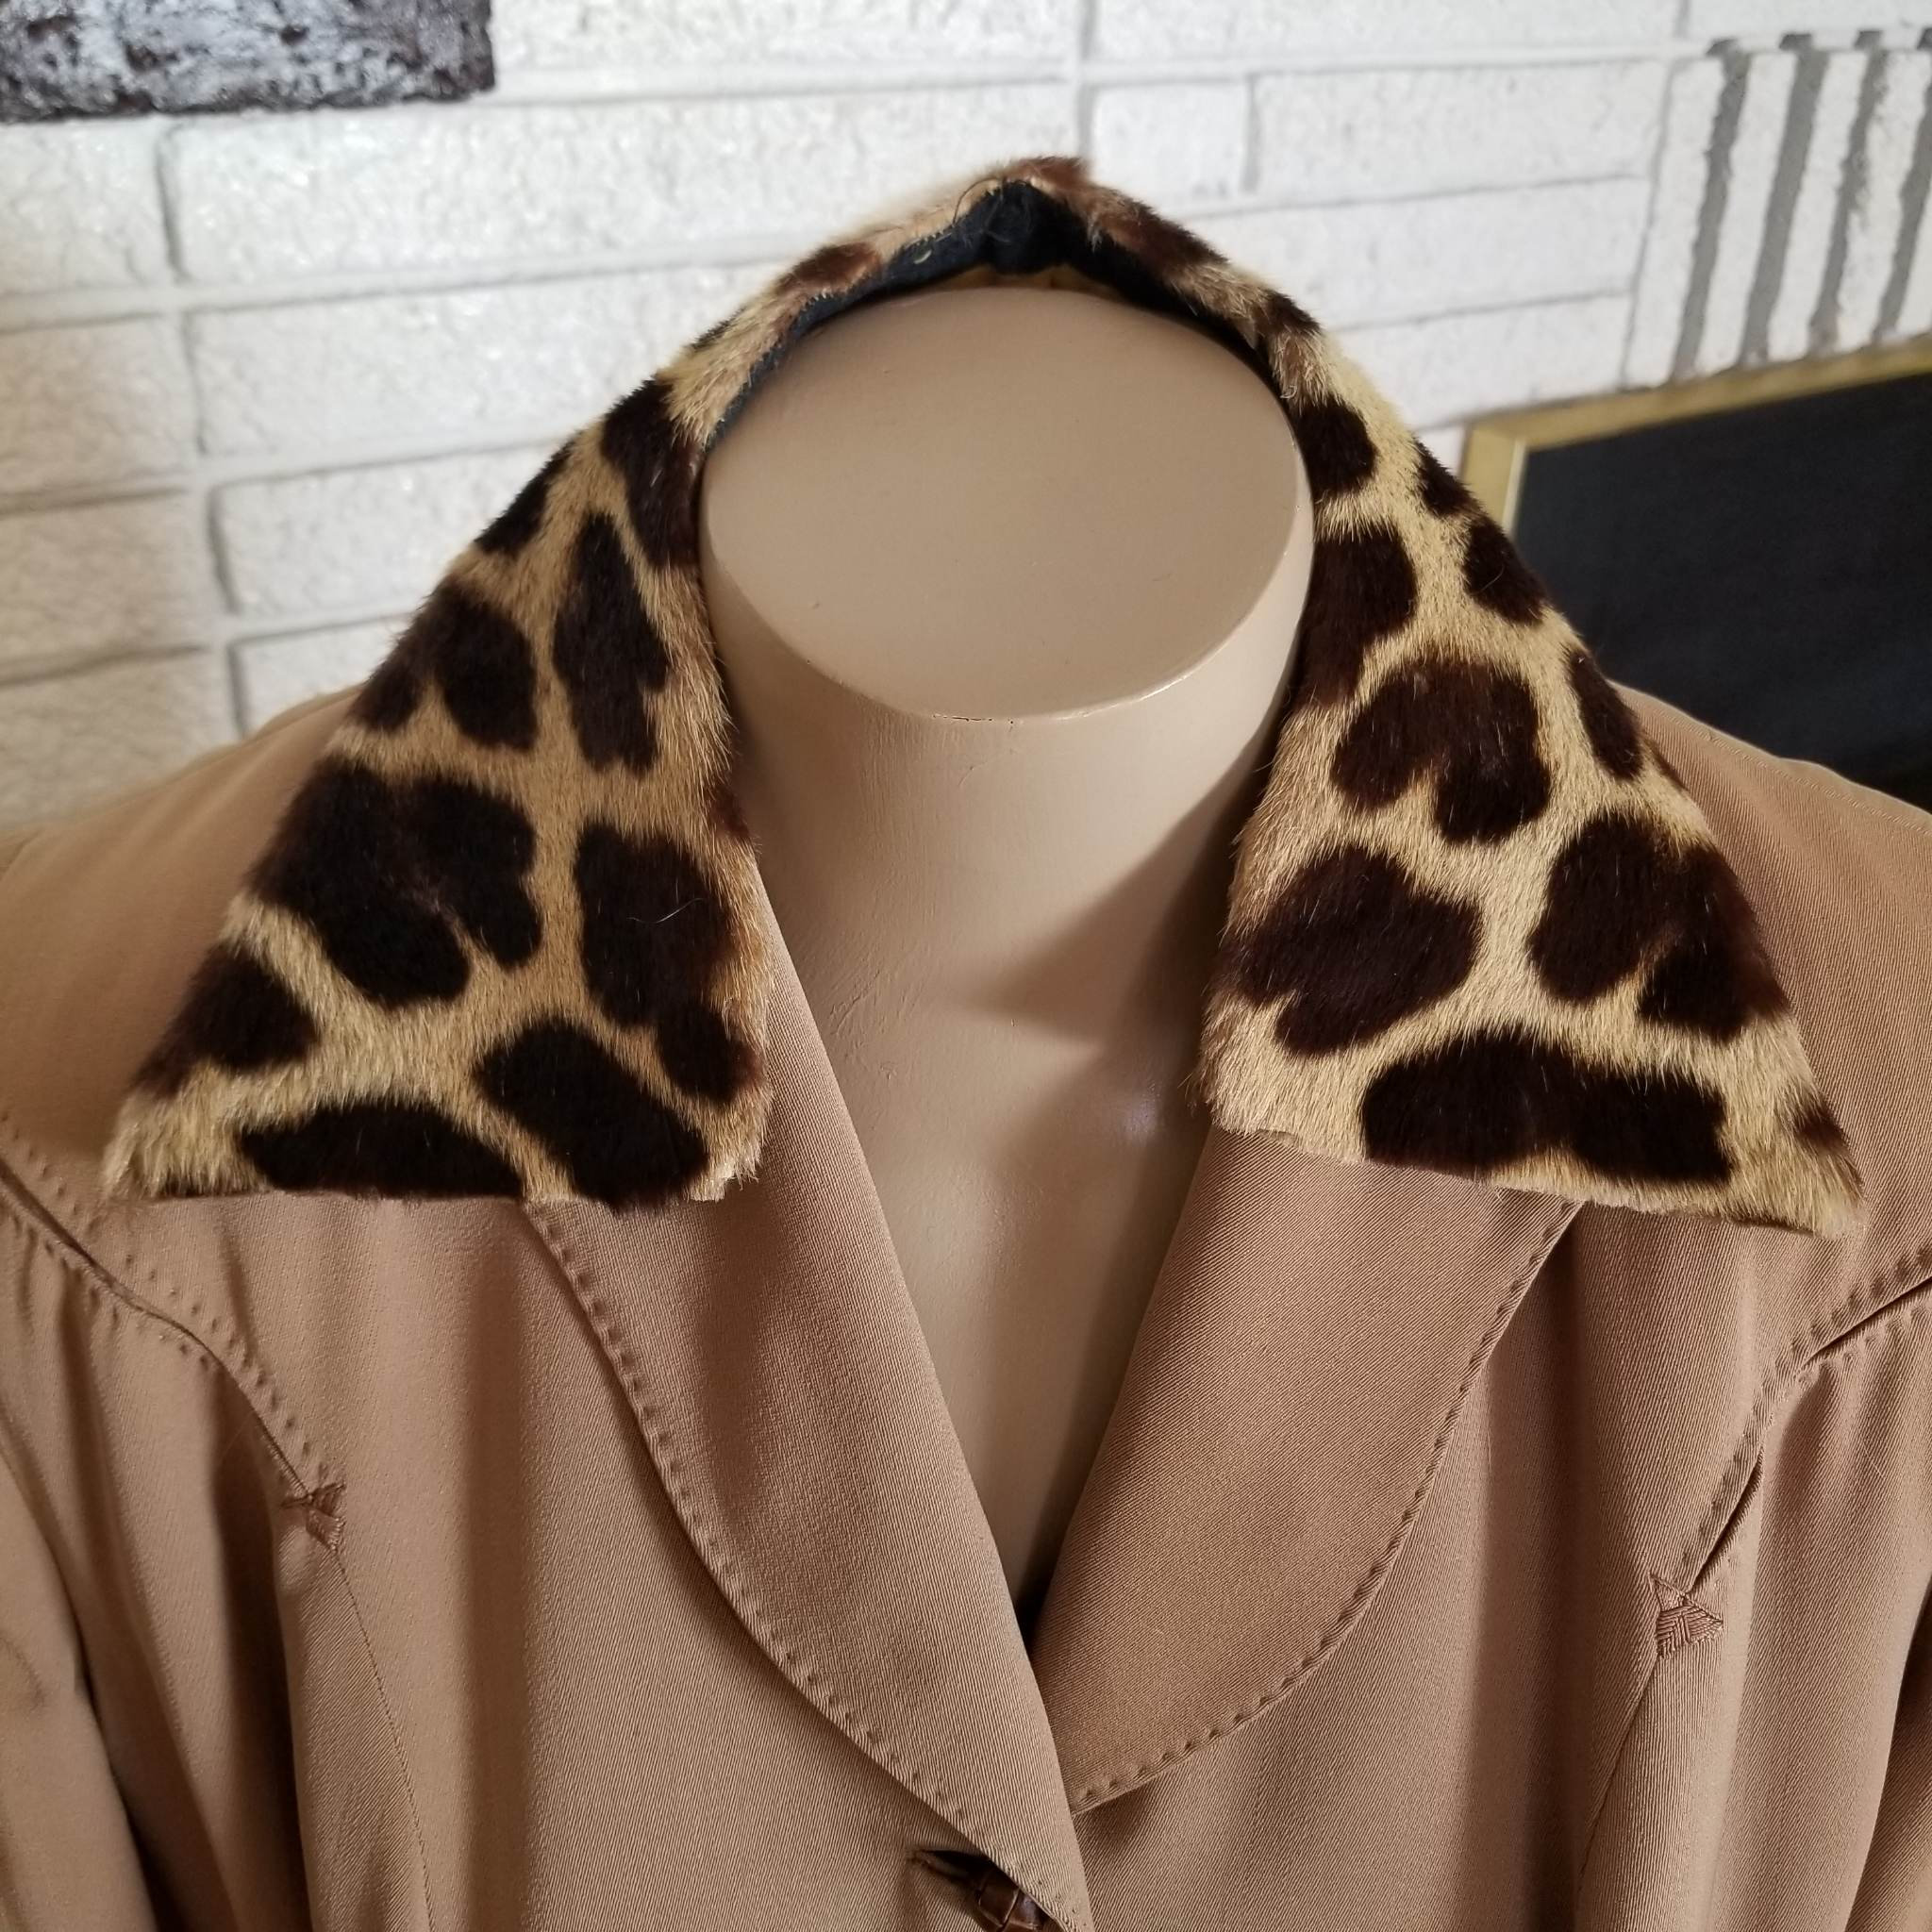 VINTAGE Leopard Print Rabbit Fur Vest With Tie Sz M 